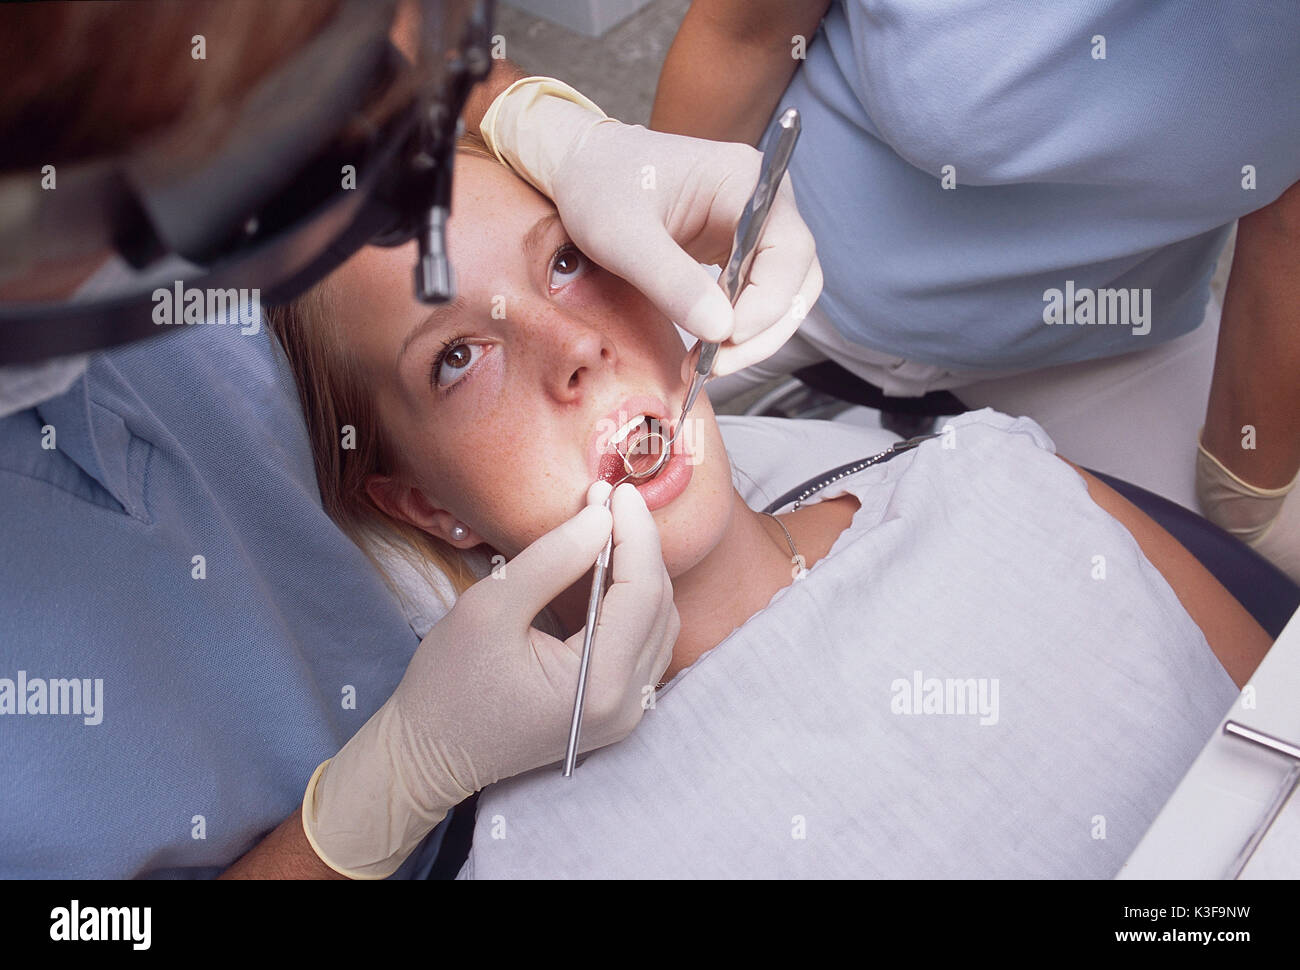 Untersuchung beim Zahnarzt Stockfoto